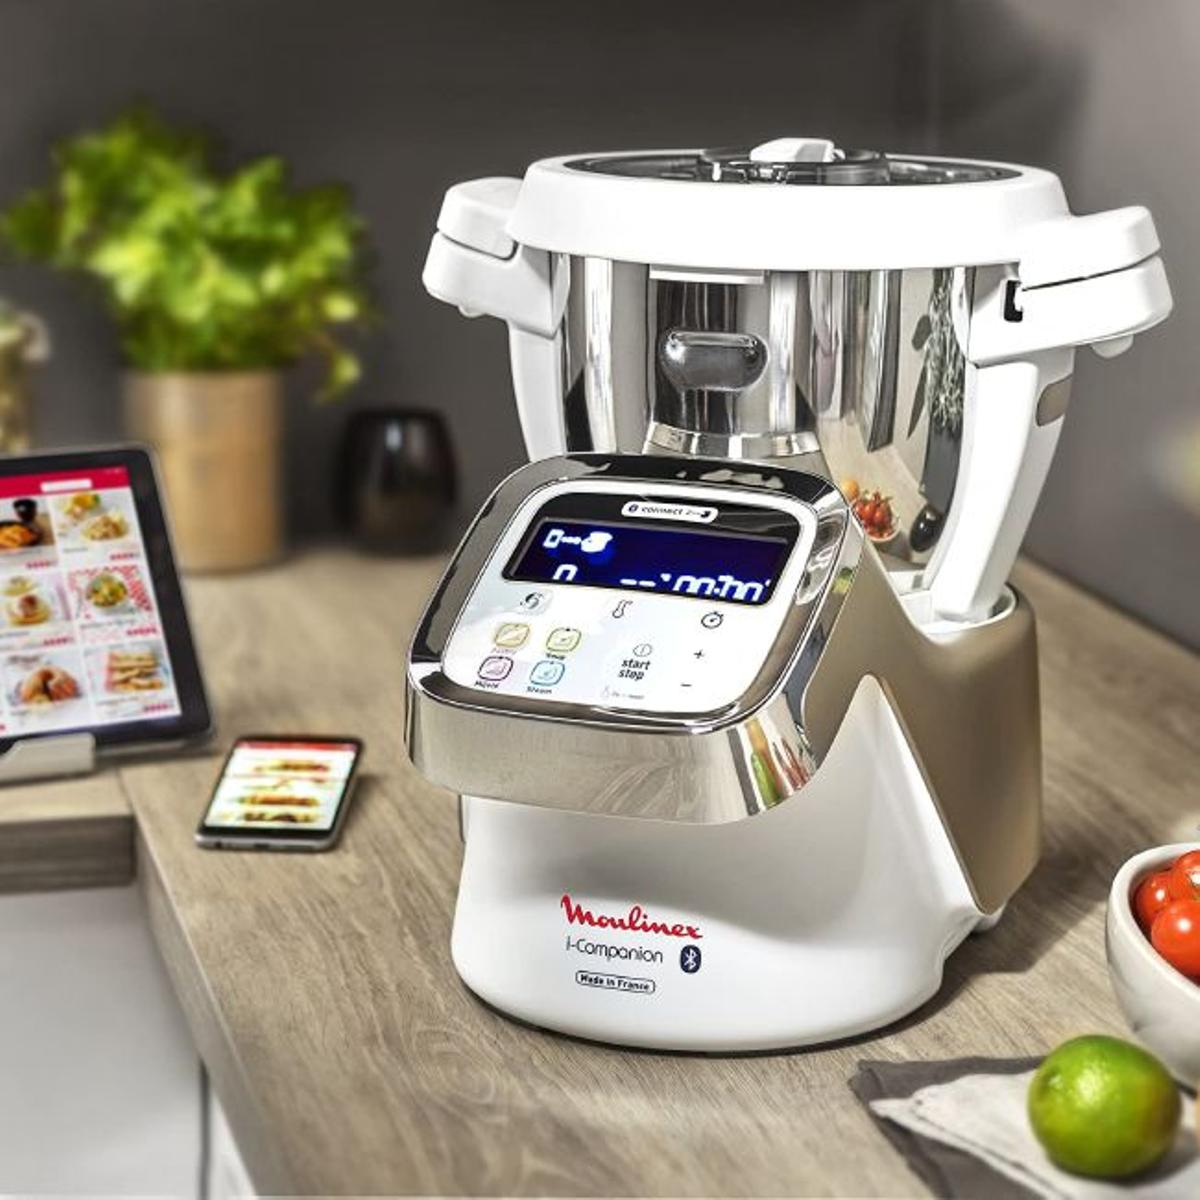 Los mejores robots de cocina de Amazon: Moulinex i-Companion HF9001